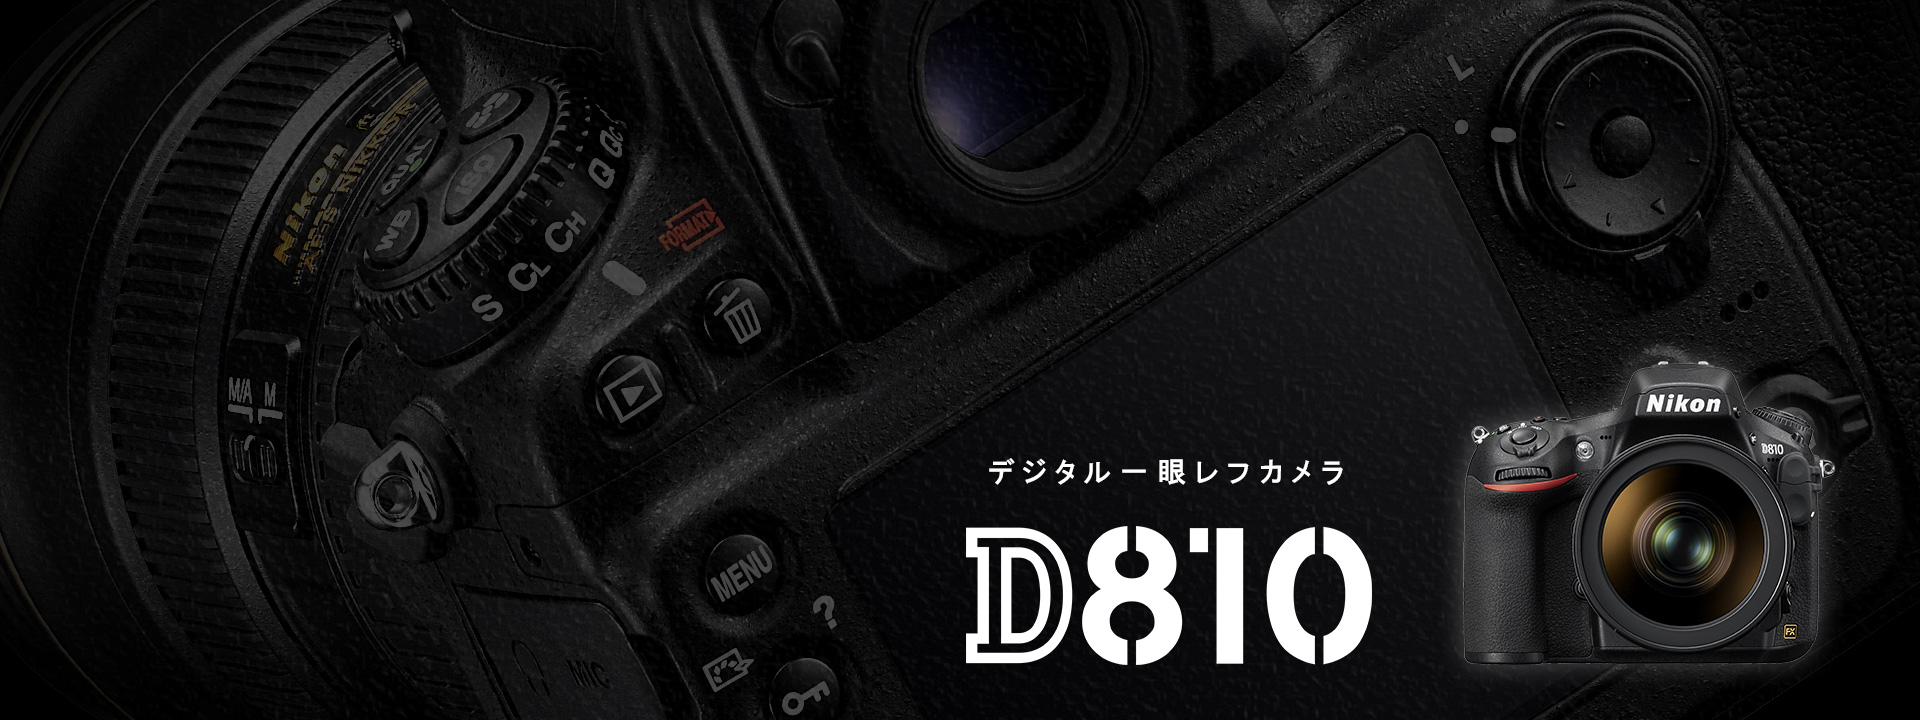 D810 - 概要 | 一眼レフカメラ | ニコンイメージング